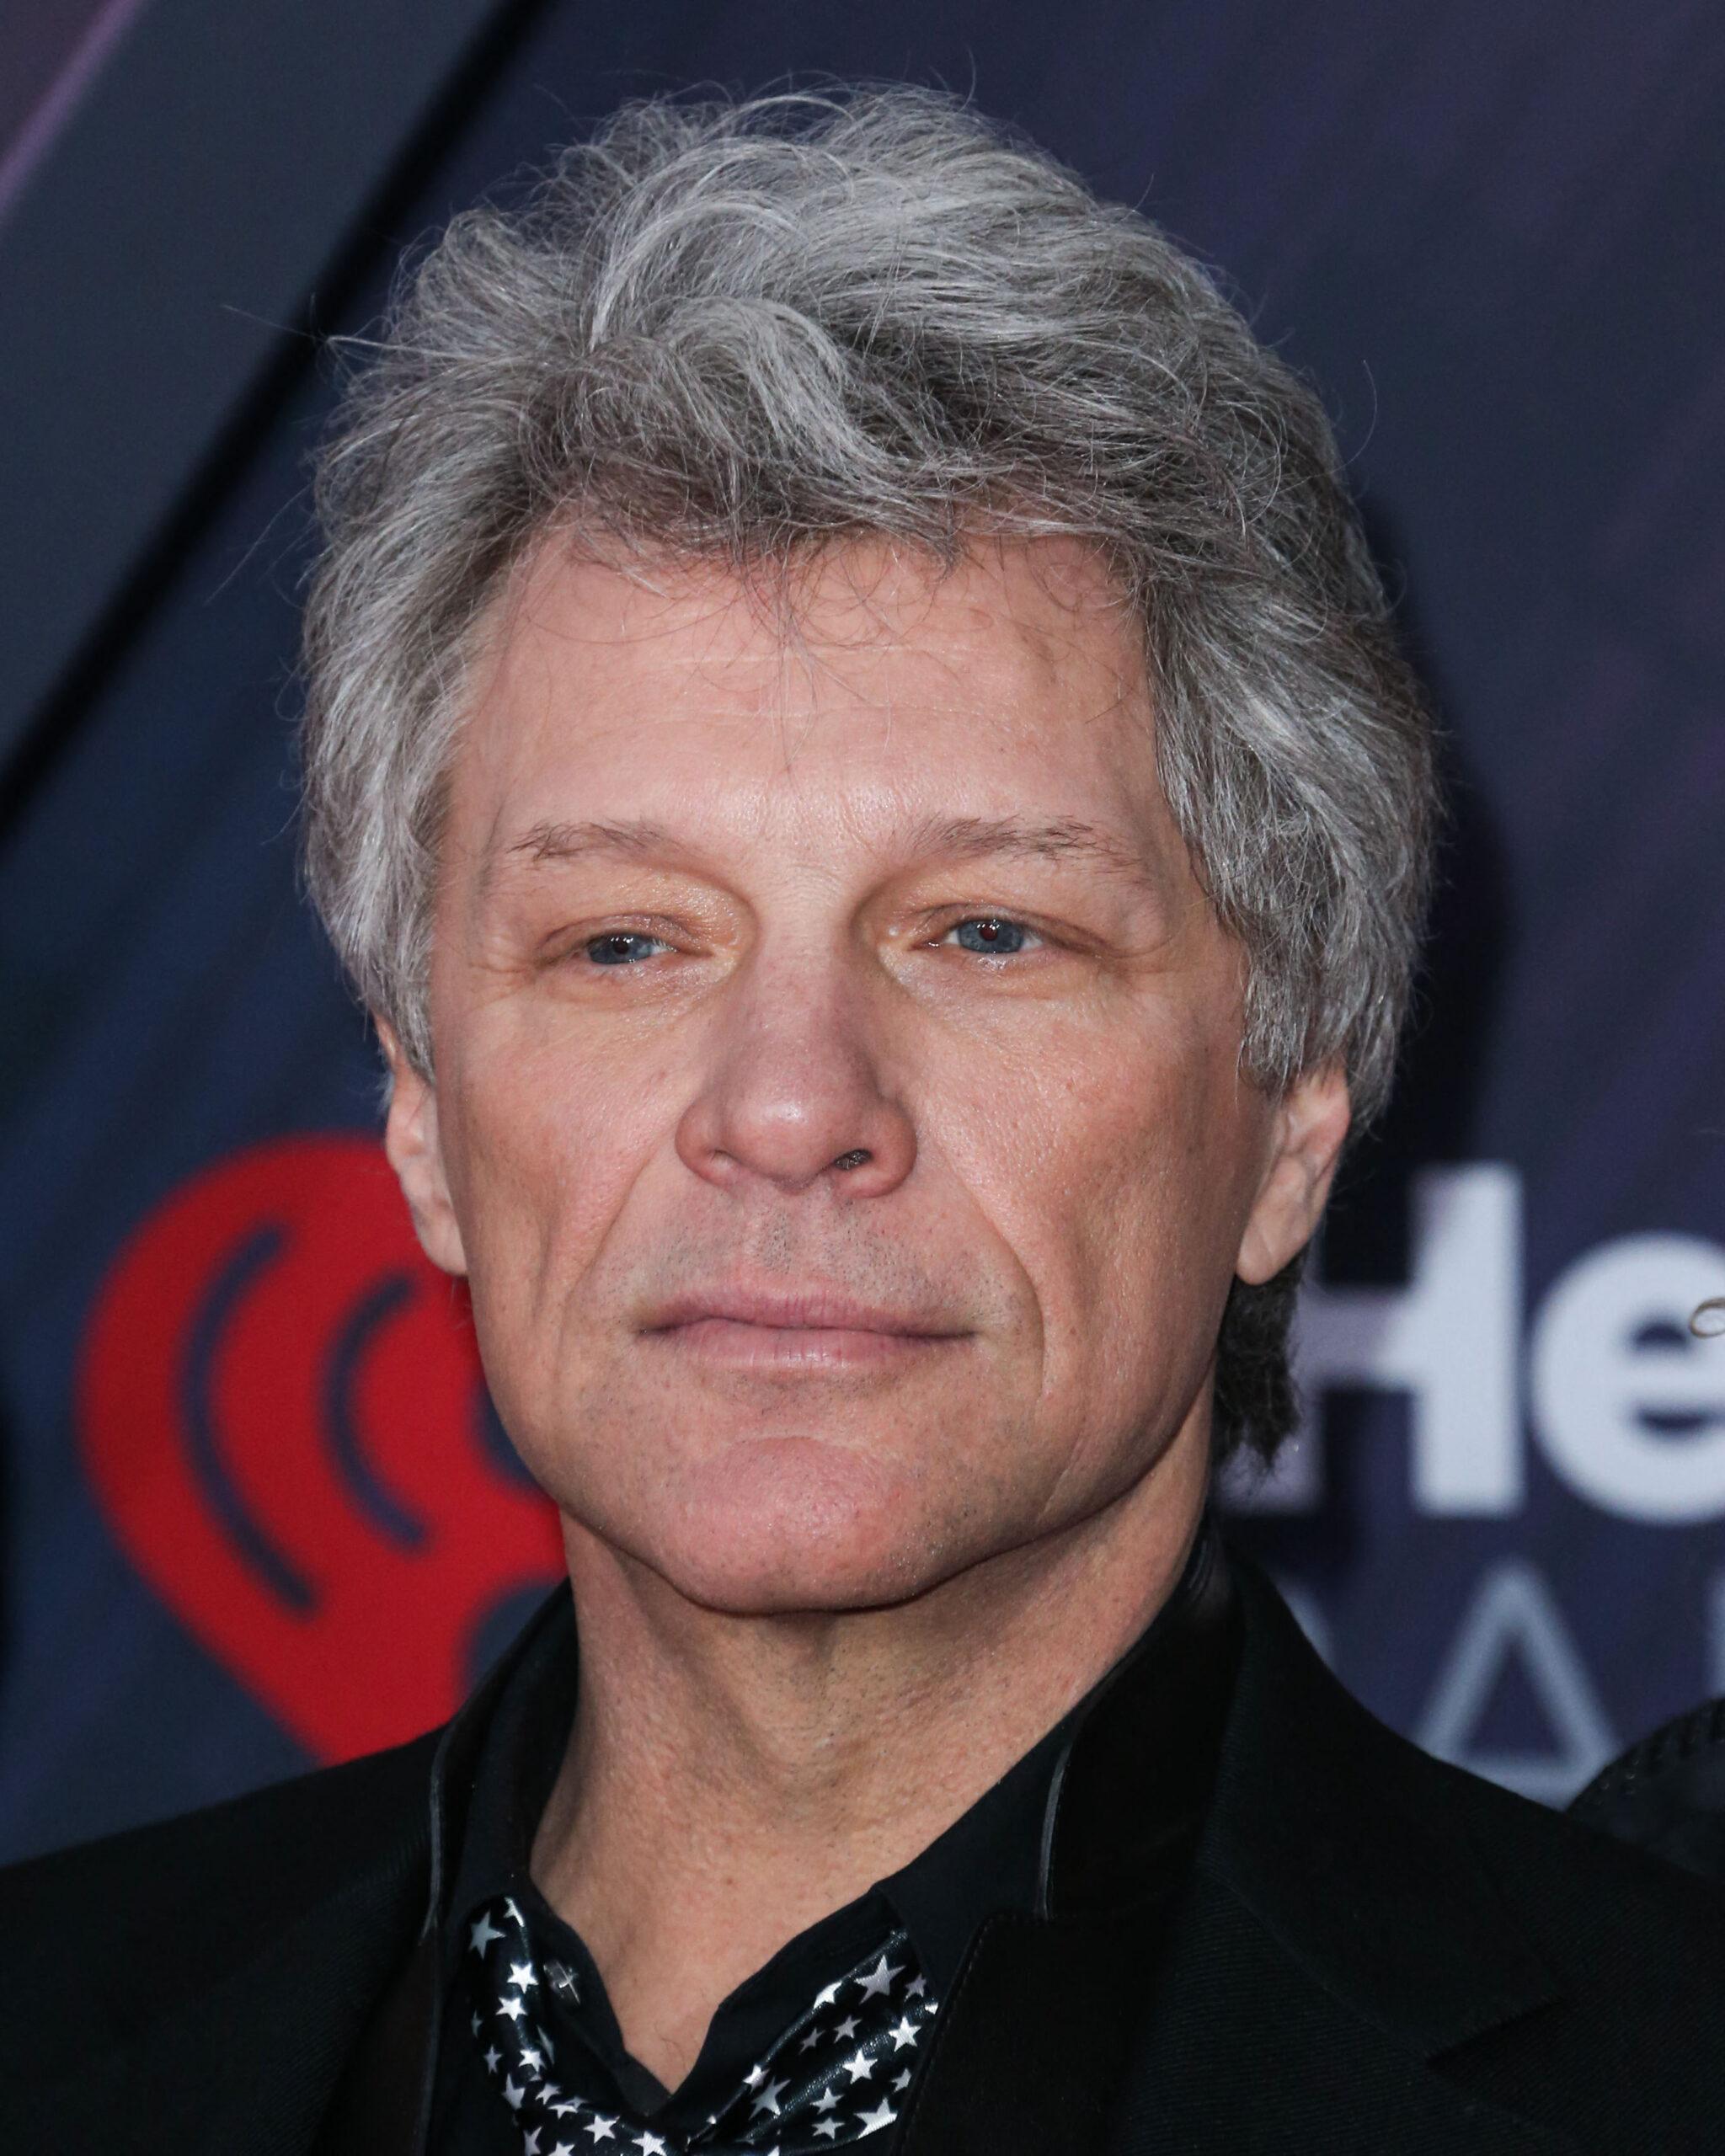 Jon Bon Jovi no caminho da recuperação: ‘Nem um dia é fácil’